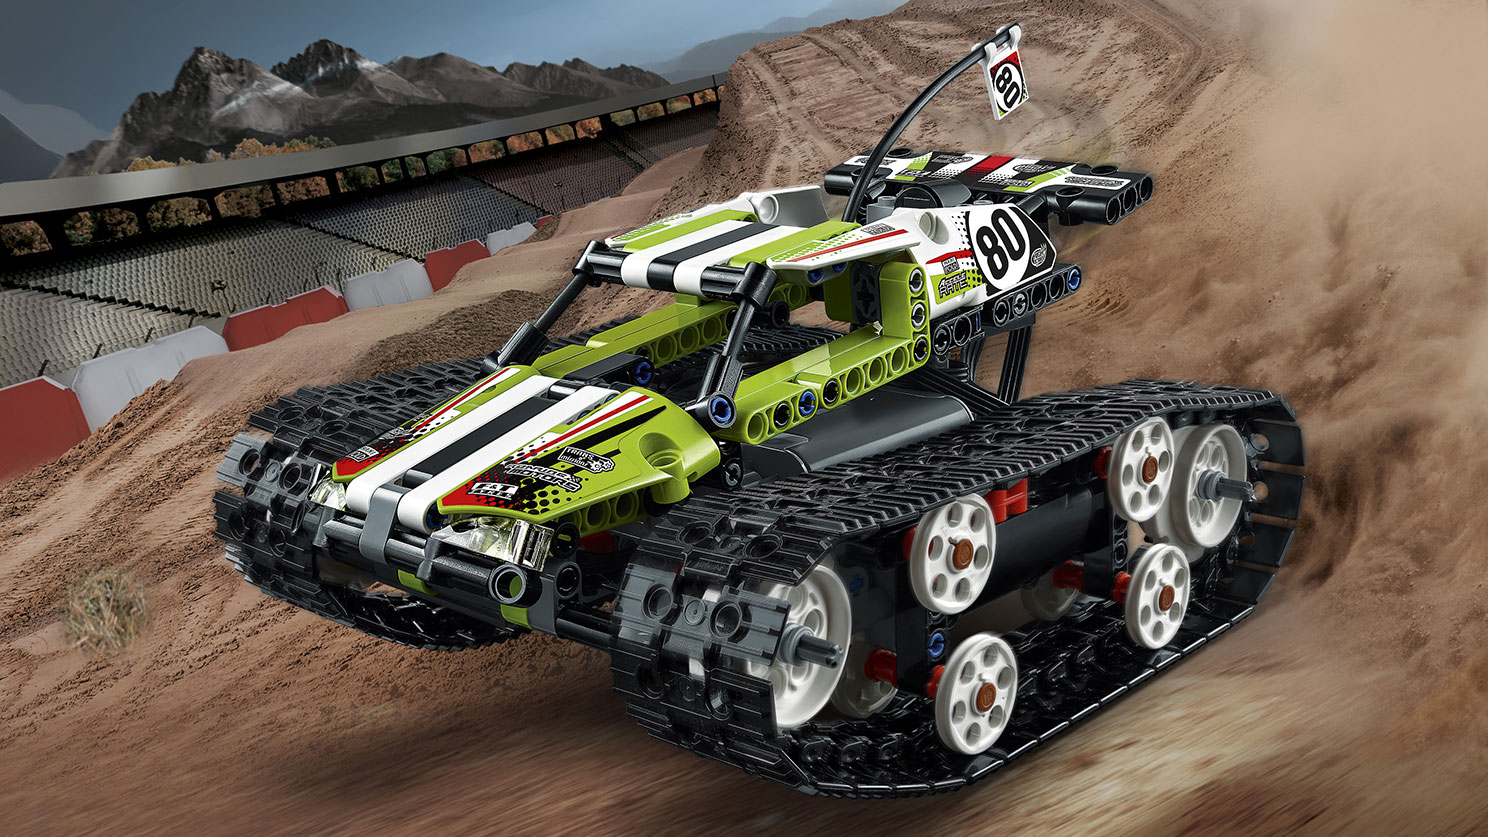 RCトラックレーサー 42065 - レゴ®テクニックセット - LEGO.comキッズ